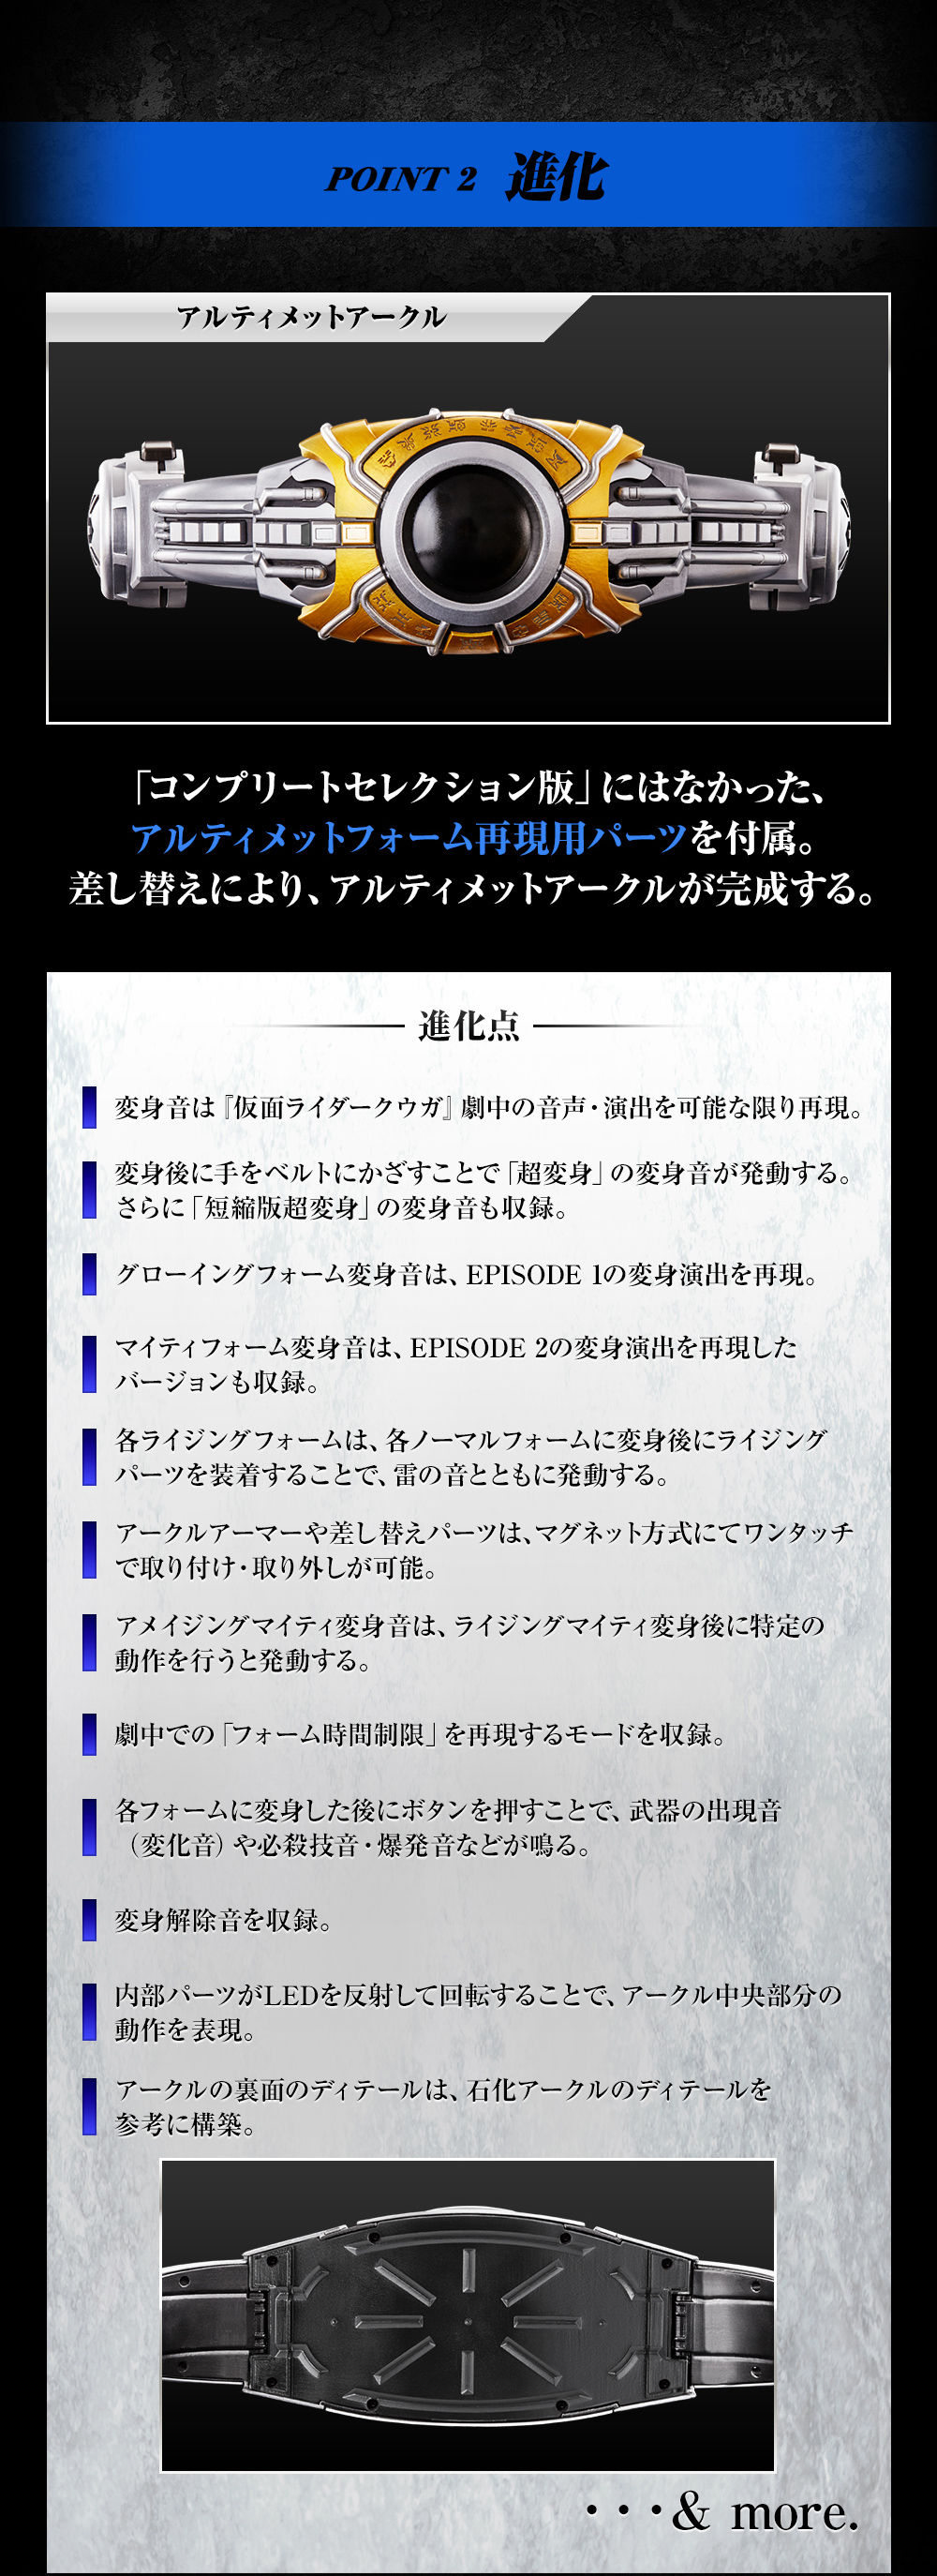 詳細公開 コンセレ新作 平成最後にふさわしい仮面ライダークウガ アークル が発売決定 Frc